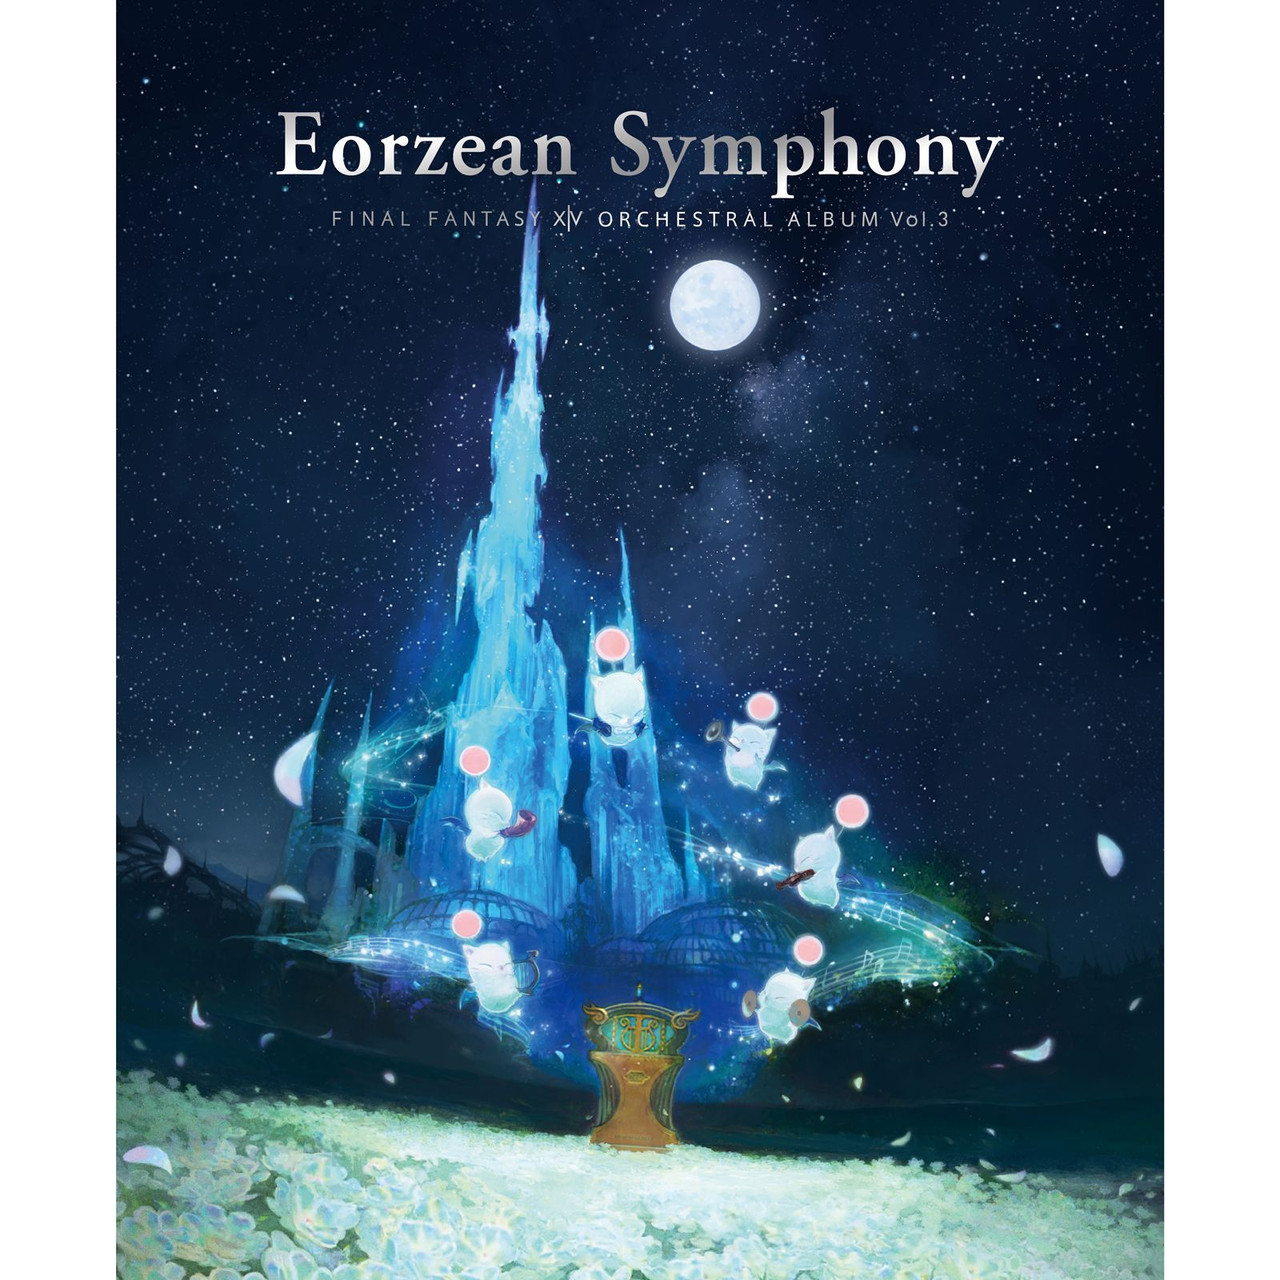 EORZEAN SYMPHONY: FINAL FANTASY XIV ORCHESTRAL ALBUM VOL. 3 [BLU-RAY]